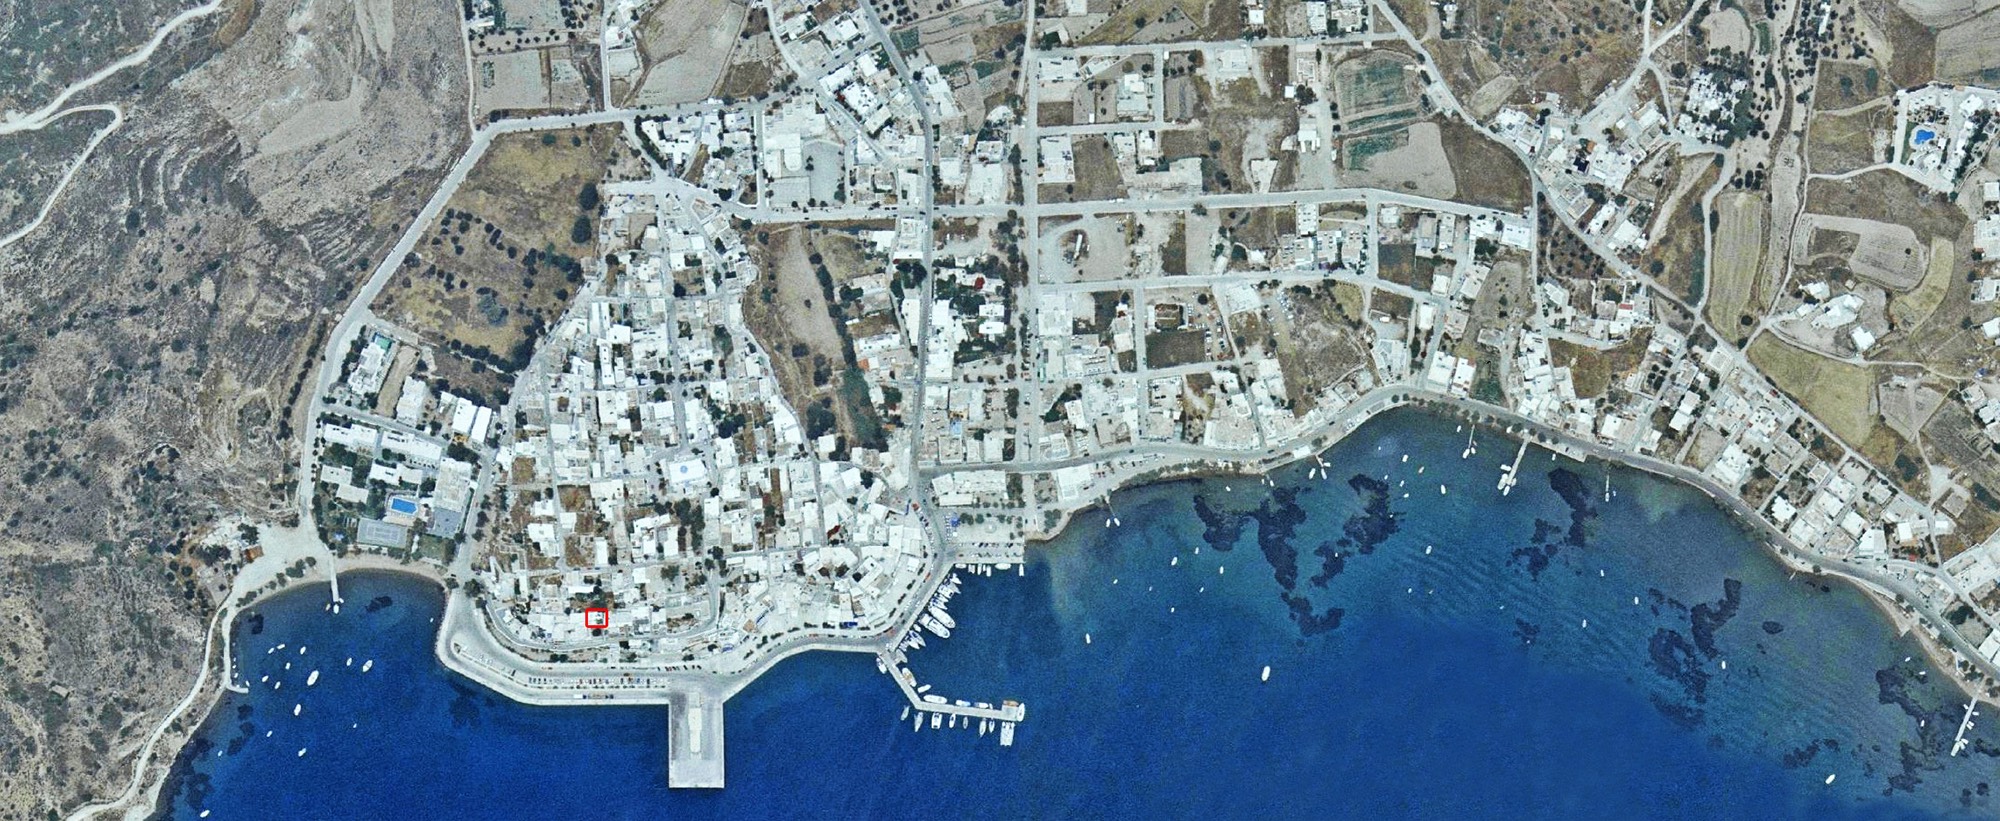 Persephone Location Satellite View